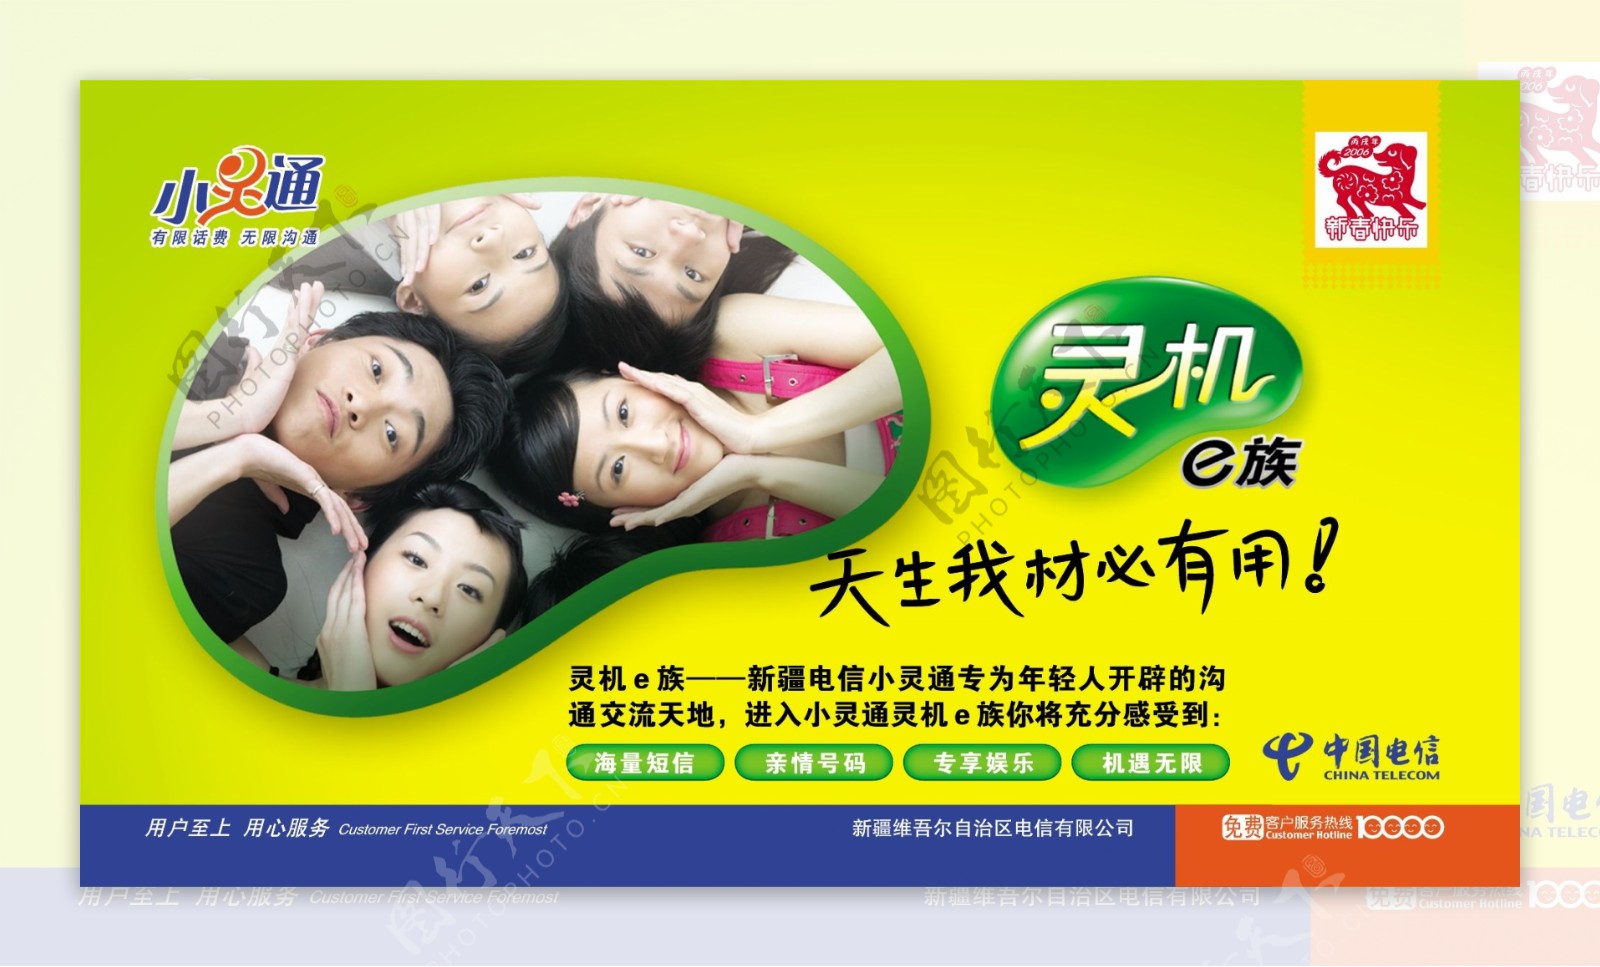 中国电信小灵通平面广告